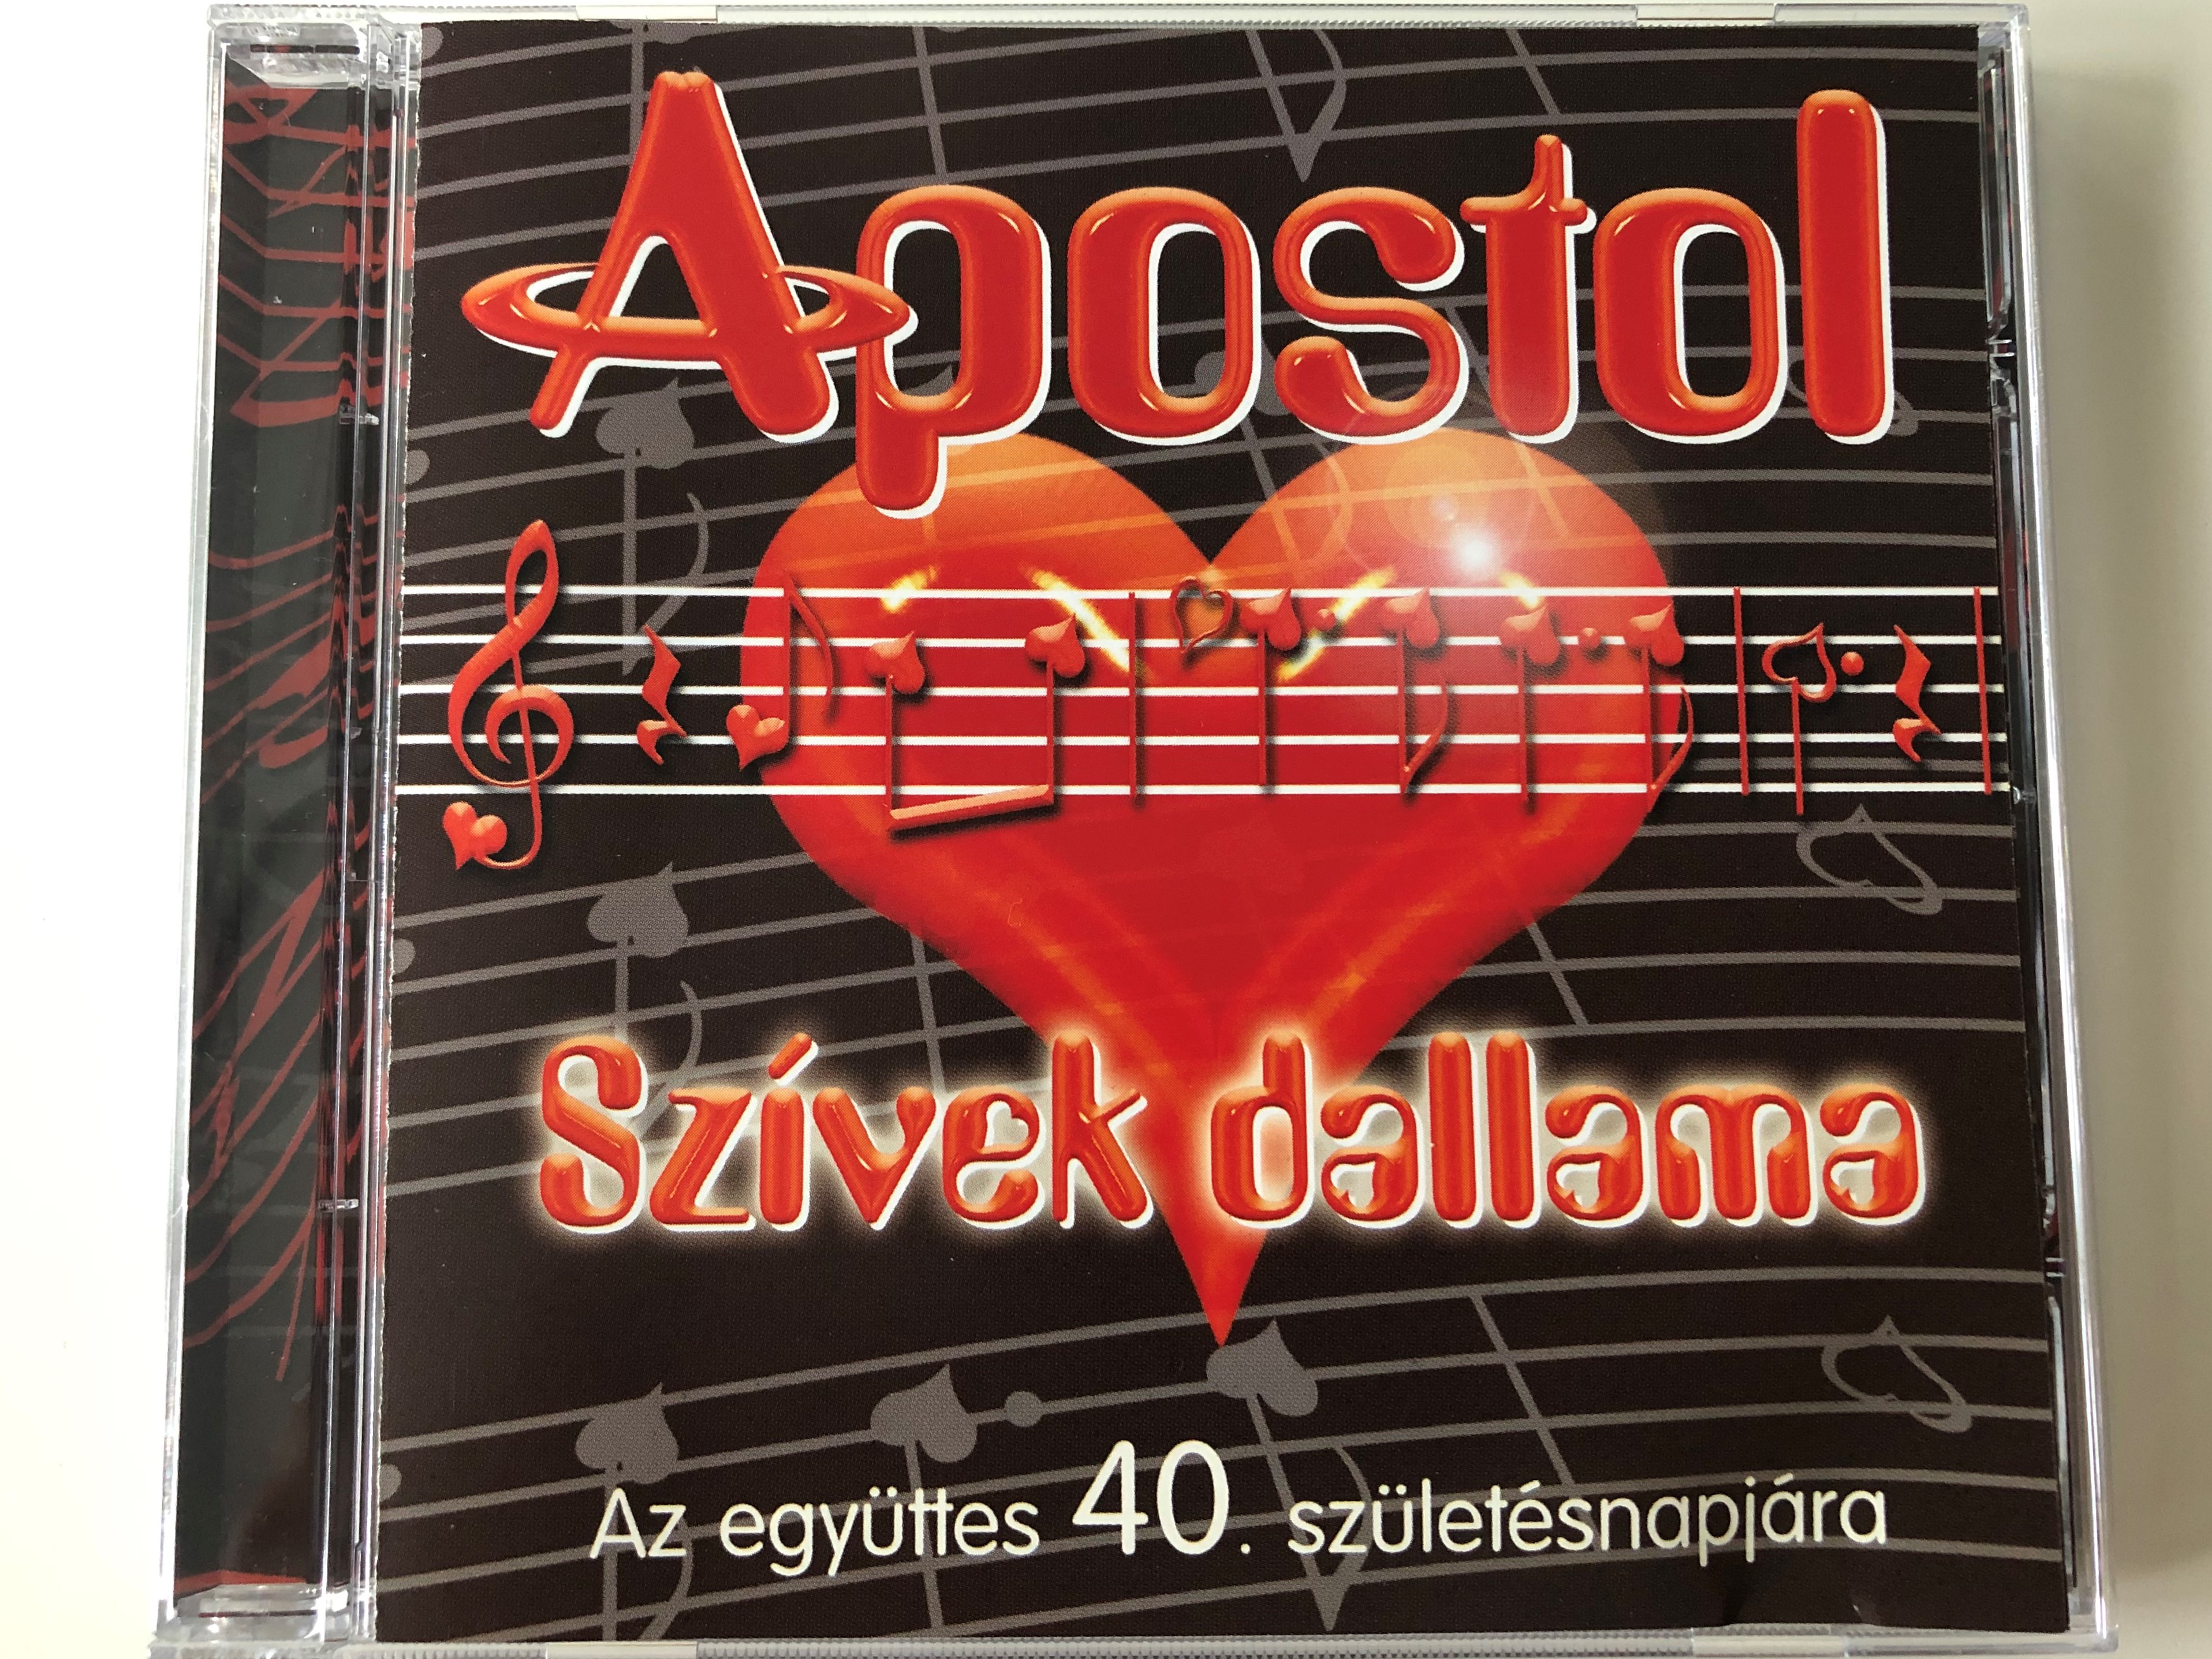 apostol-sz-vek-dallama-az-egyuttes-40.-szuletesnapjara-tom-tom-records-audio-cd-2011-ttcd-162-1-.jpg